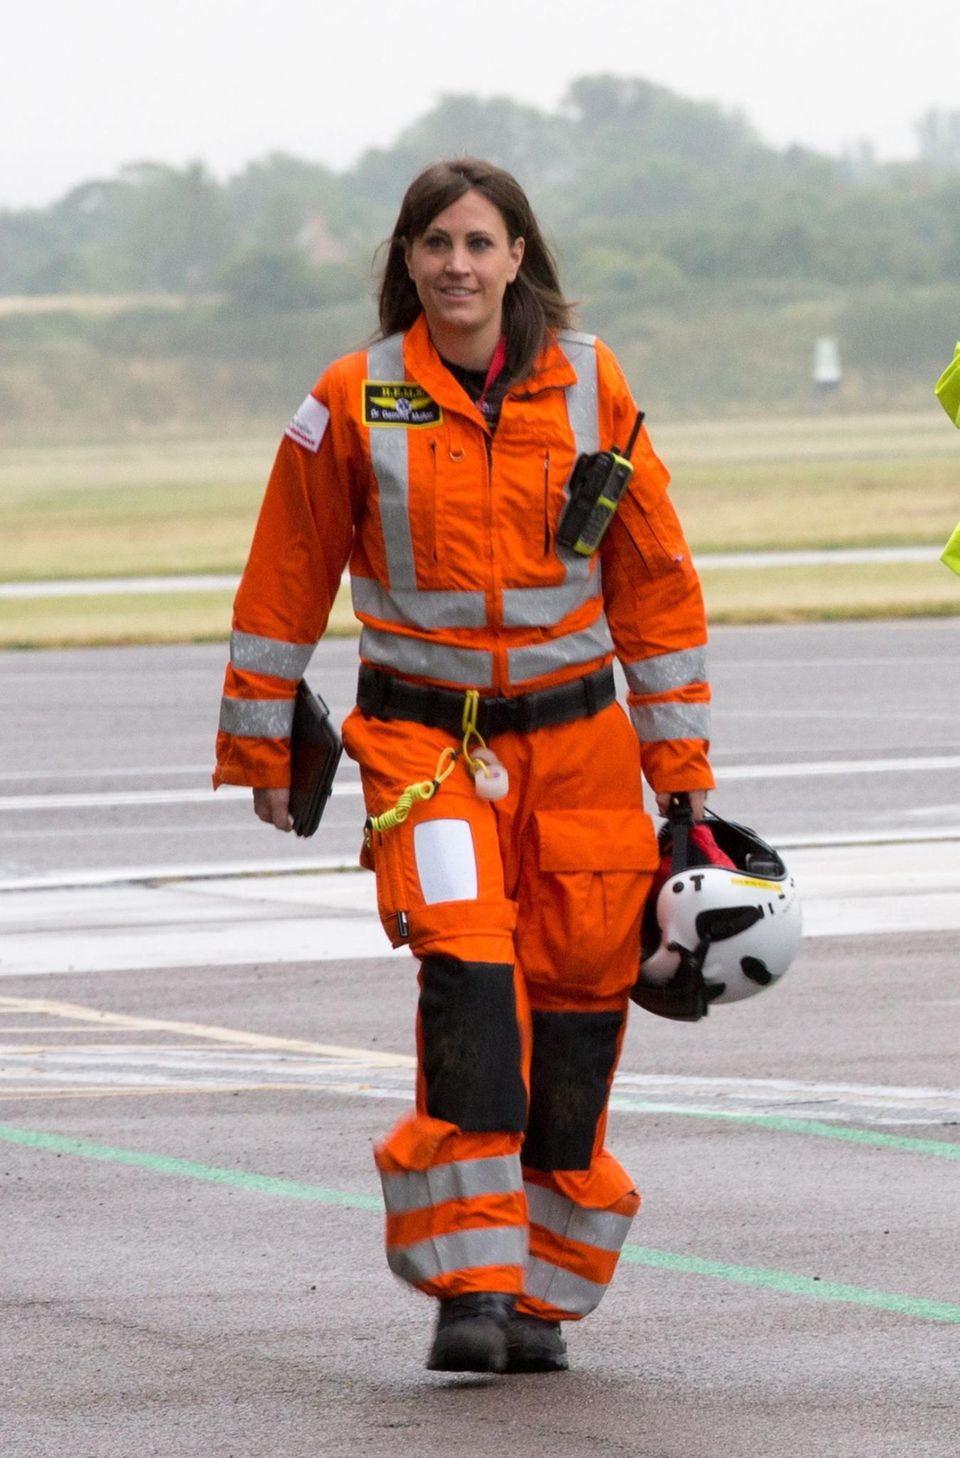 DR. Gemma Mullen, 33,ist eine neue Kollegin von Prinz William bei der "East Anglian Air Ambulance". Mit ihren langen braunen Haare und ihren Gesichtszüge erinnere sie an Williams Frau Kate, finden die Reporter britischer Medien.